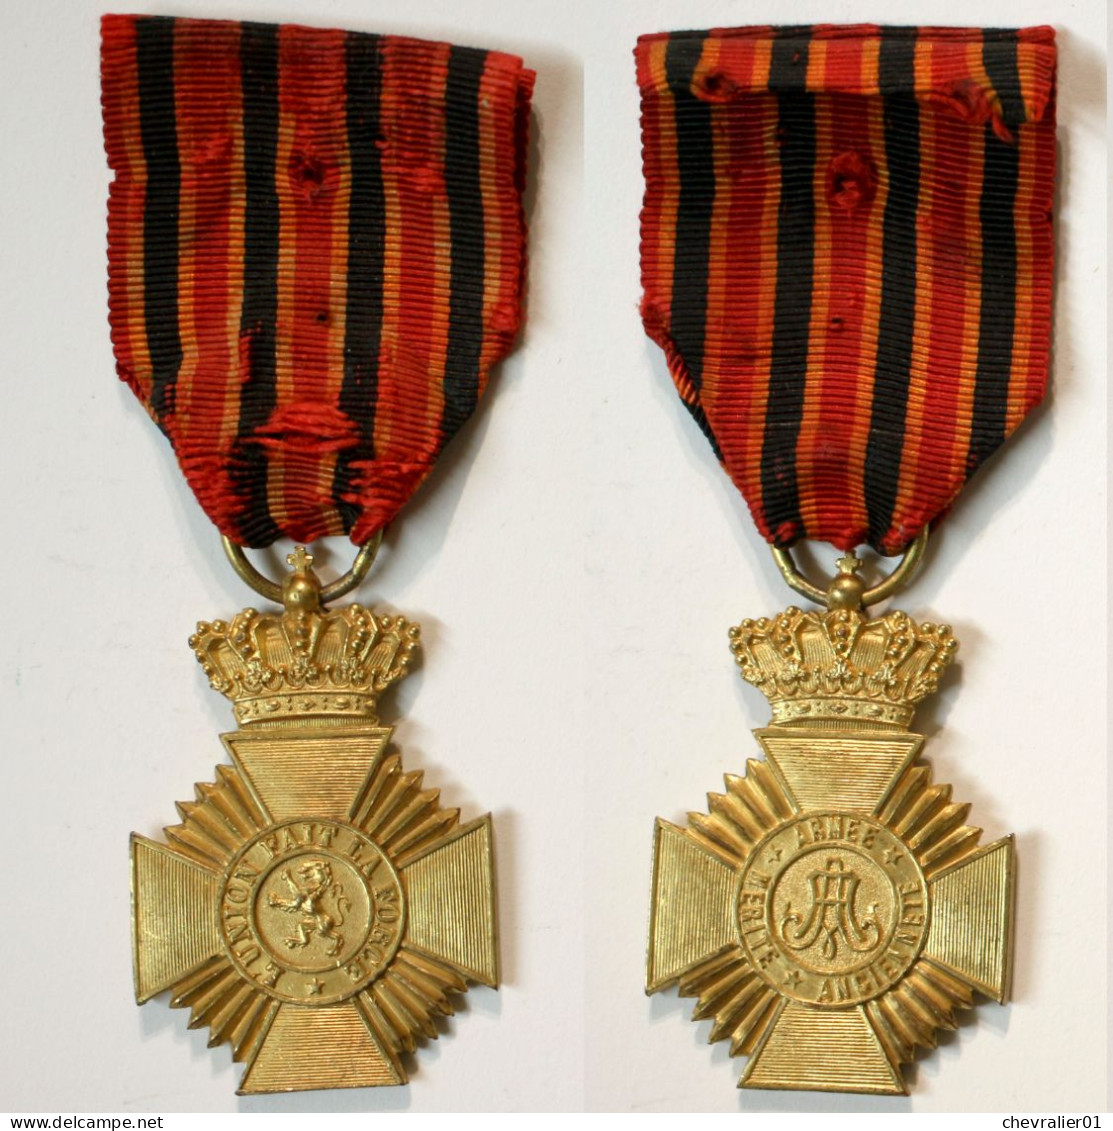 Médaille -BE-401-II-B-V1_2eme Classe_ruban Pour Courage_1873-1951 - Belgique